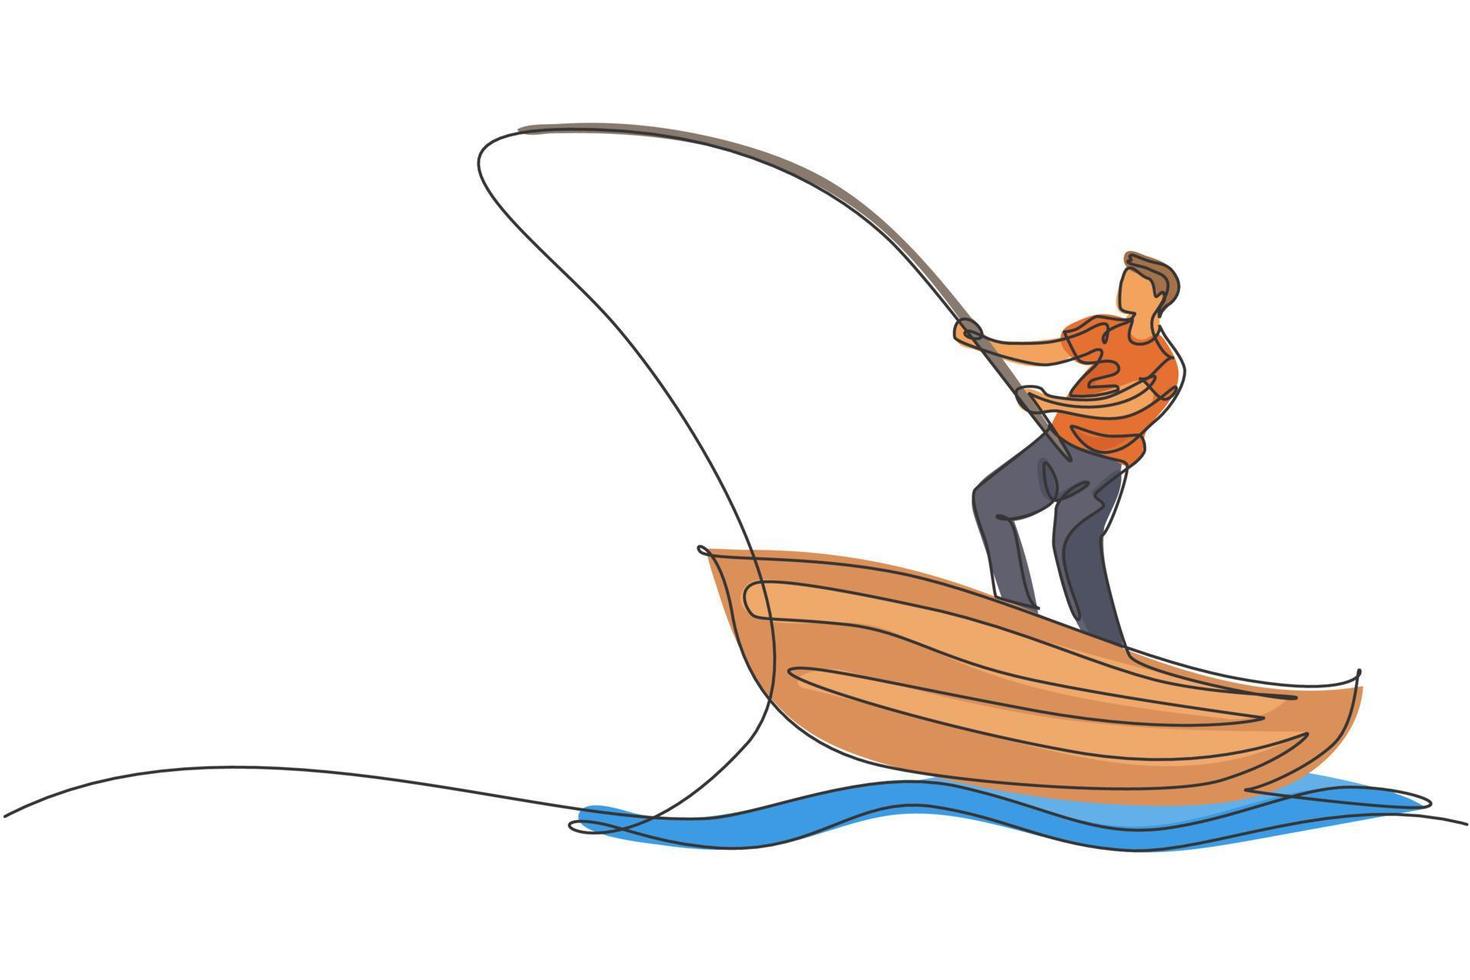 een doorlopende lijntekening van een jonge visser die gelukkig staat en vanaf de houten boot op het meer vist. visserij vrijetijdsbesteding hobby vakantie concept. dynamische enkele lijn tekenen ontwerp vectorillustratie vector